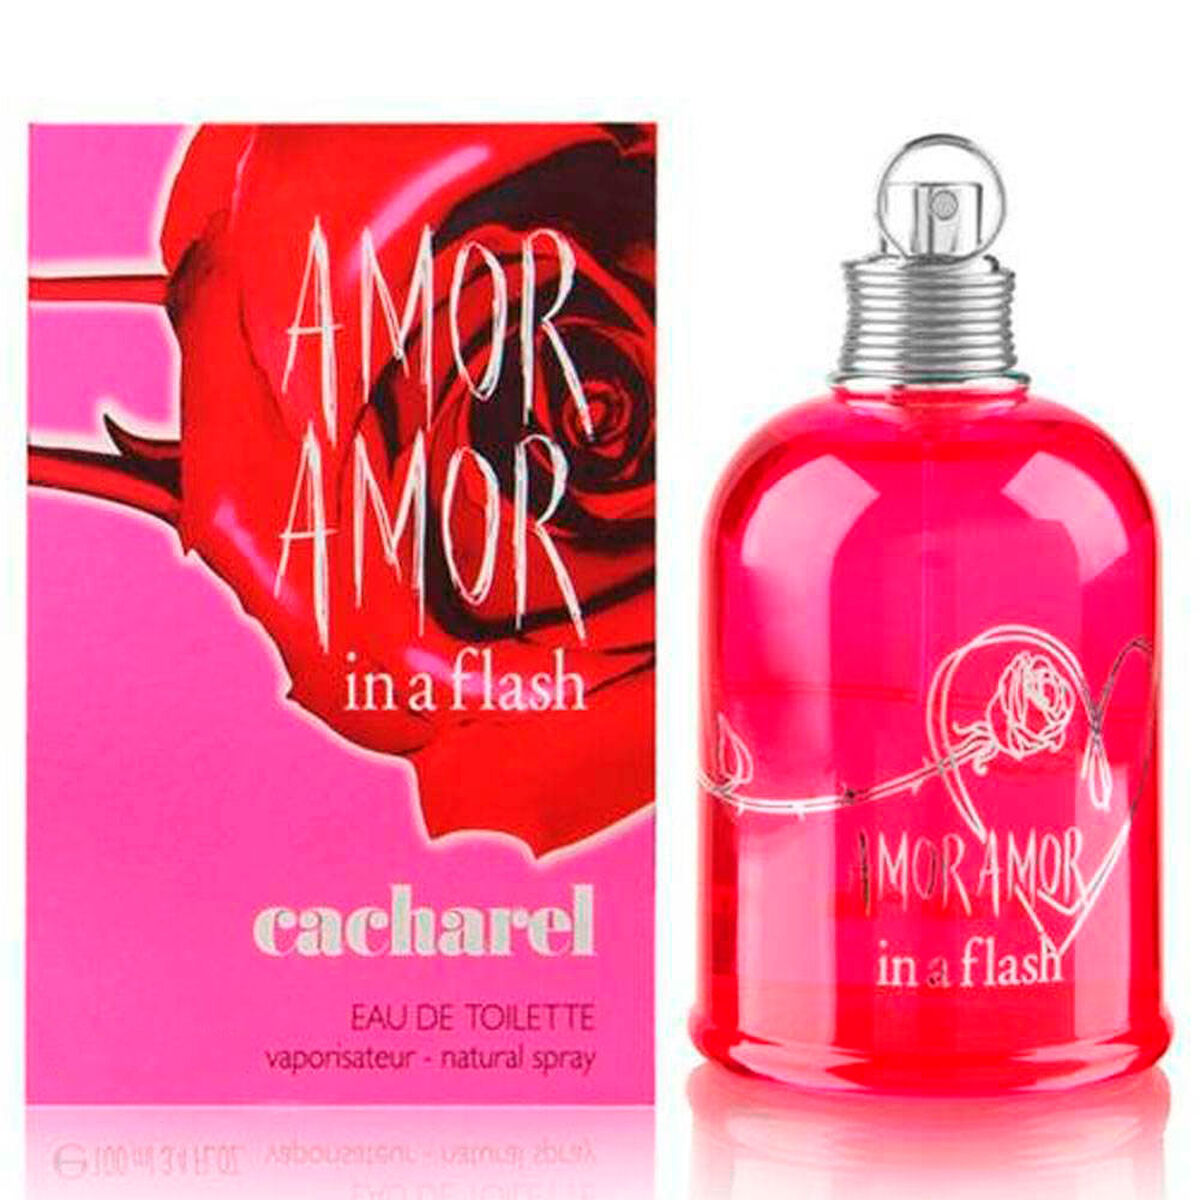 Perfume Cacharel Amor amor 100 ml